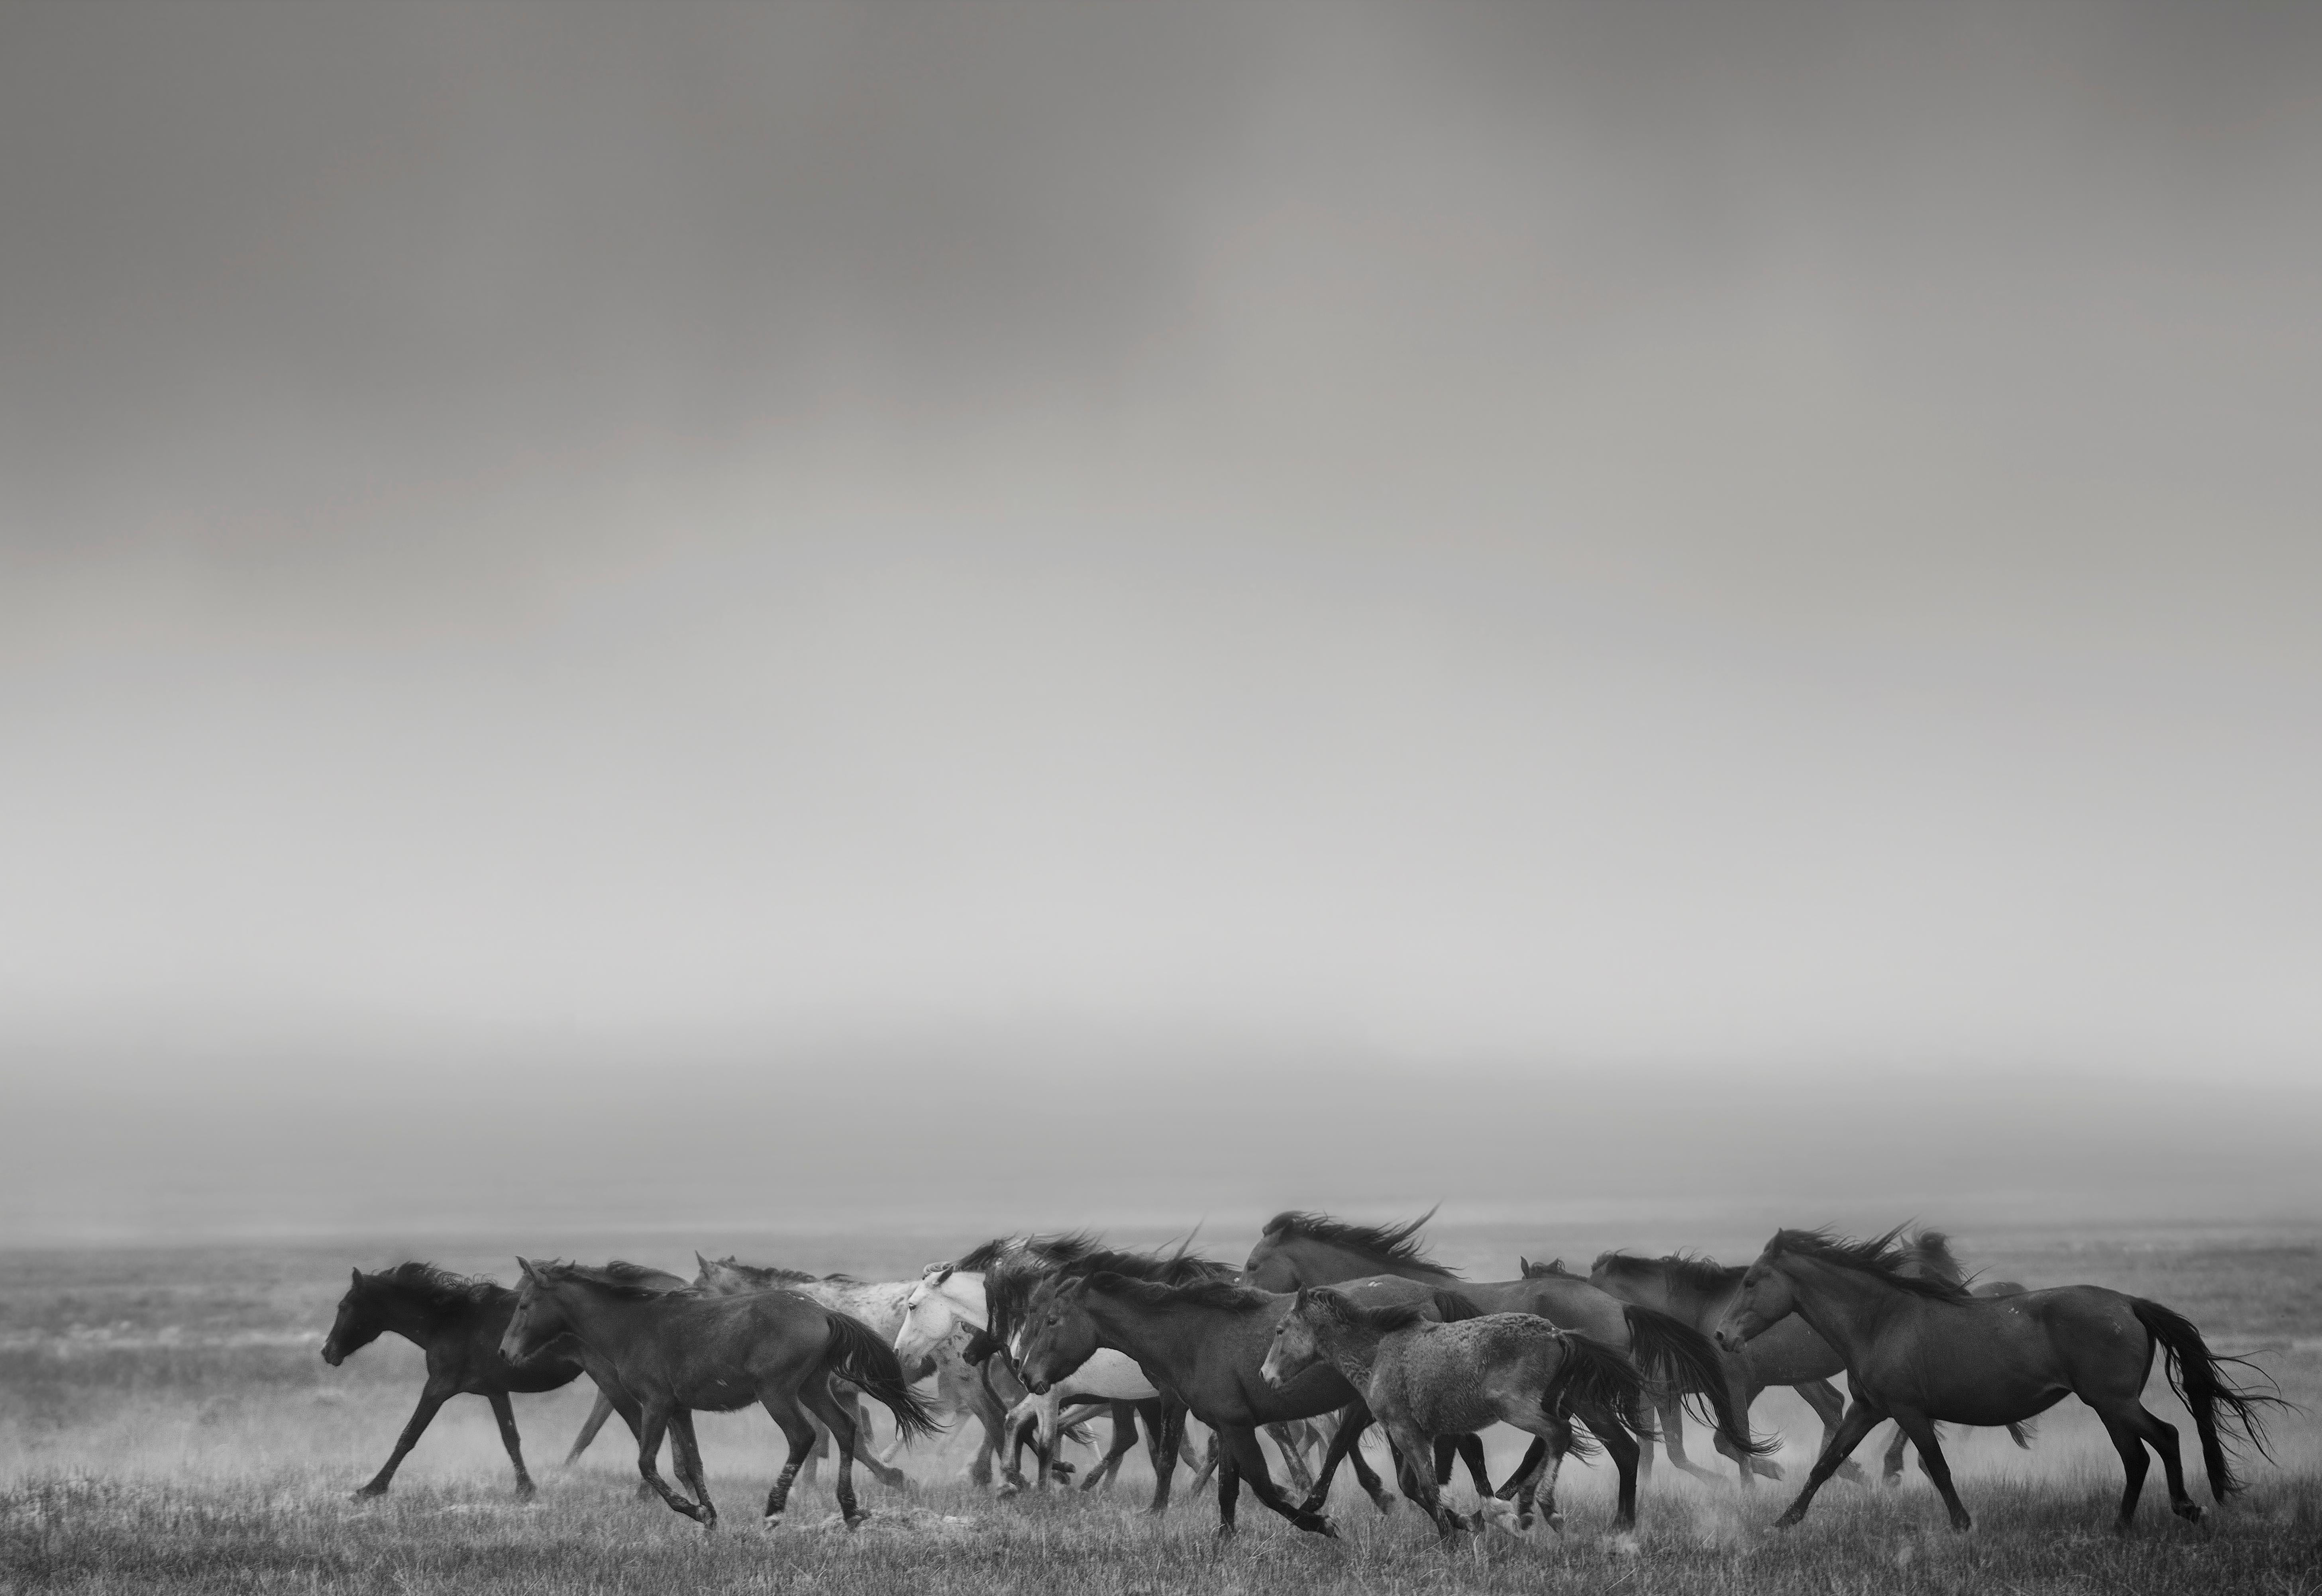 Shane Russeck Black and White Photograph – „Dream State“ – 40x50 Schwarz-Weiß-Fotografie mit Wildpferden in Senf, signiert